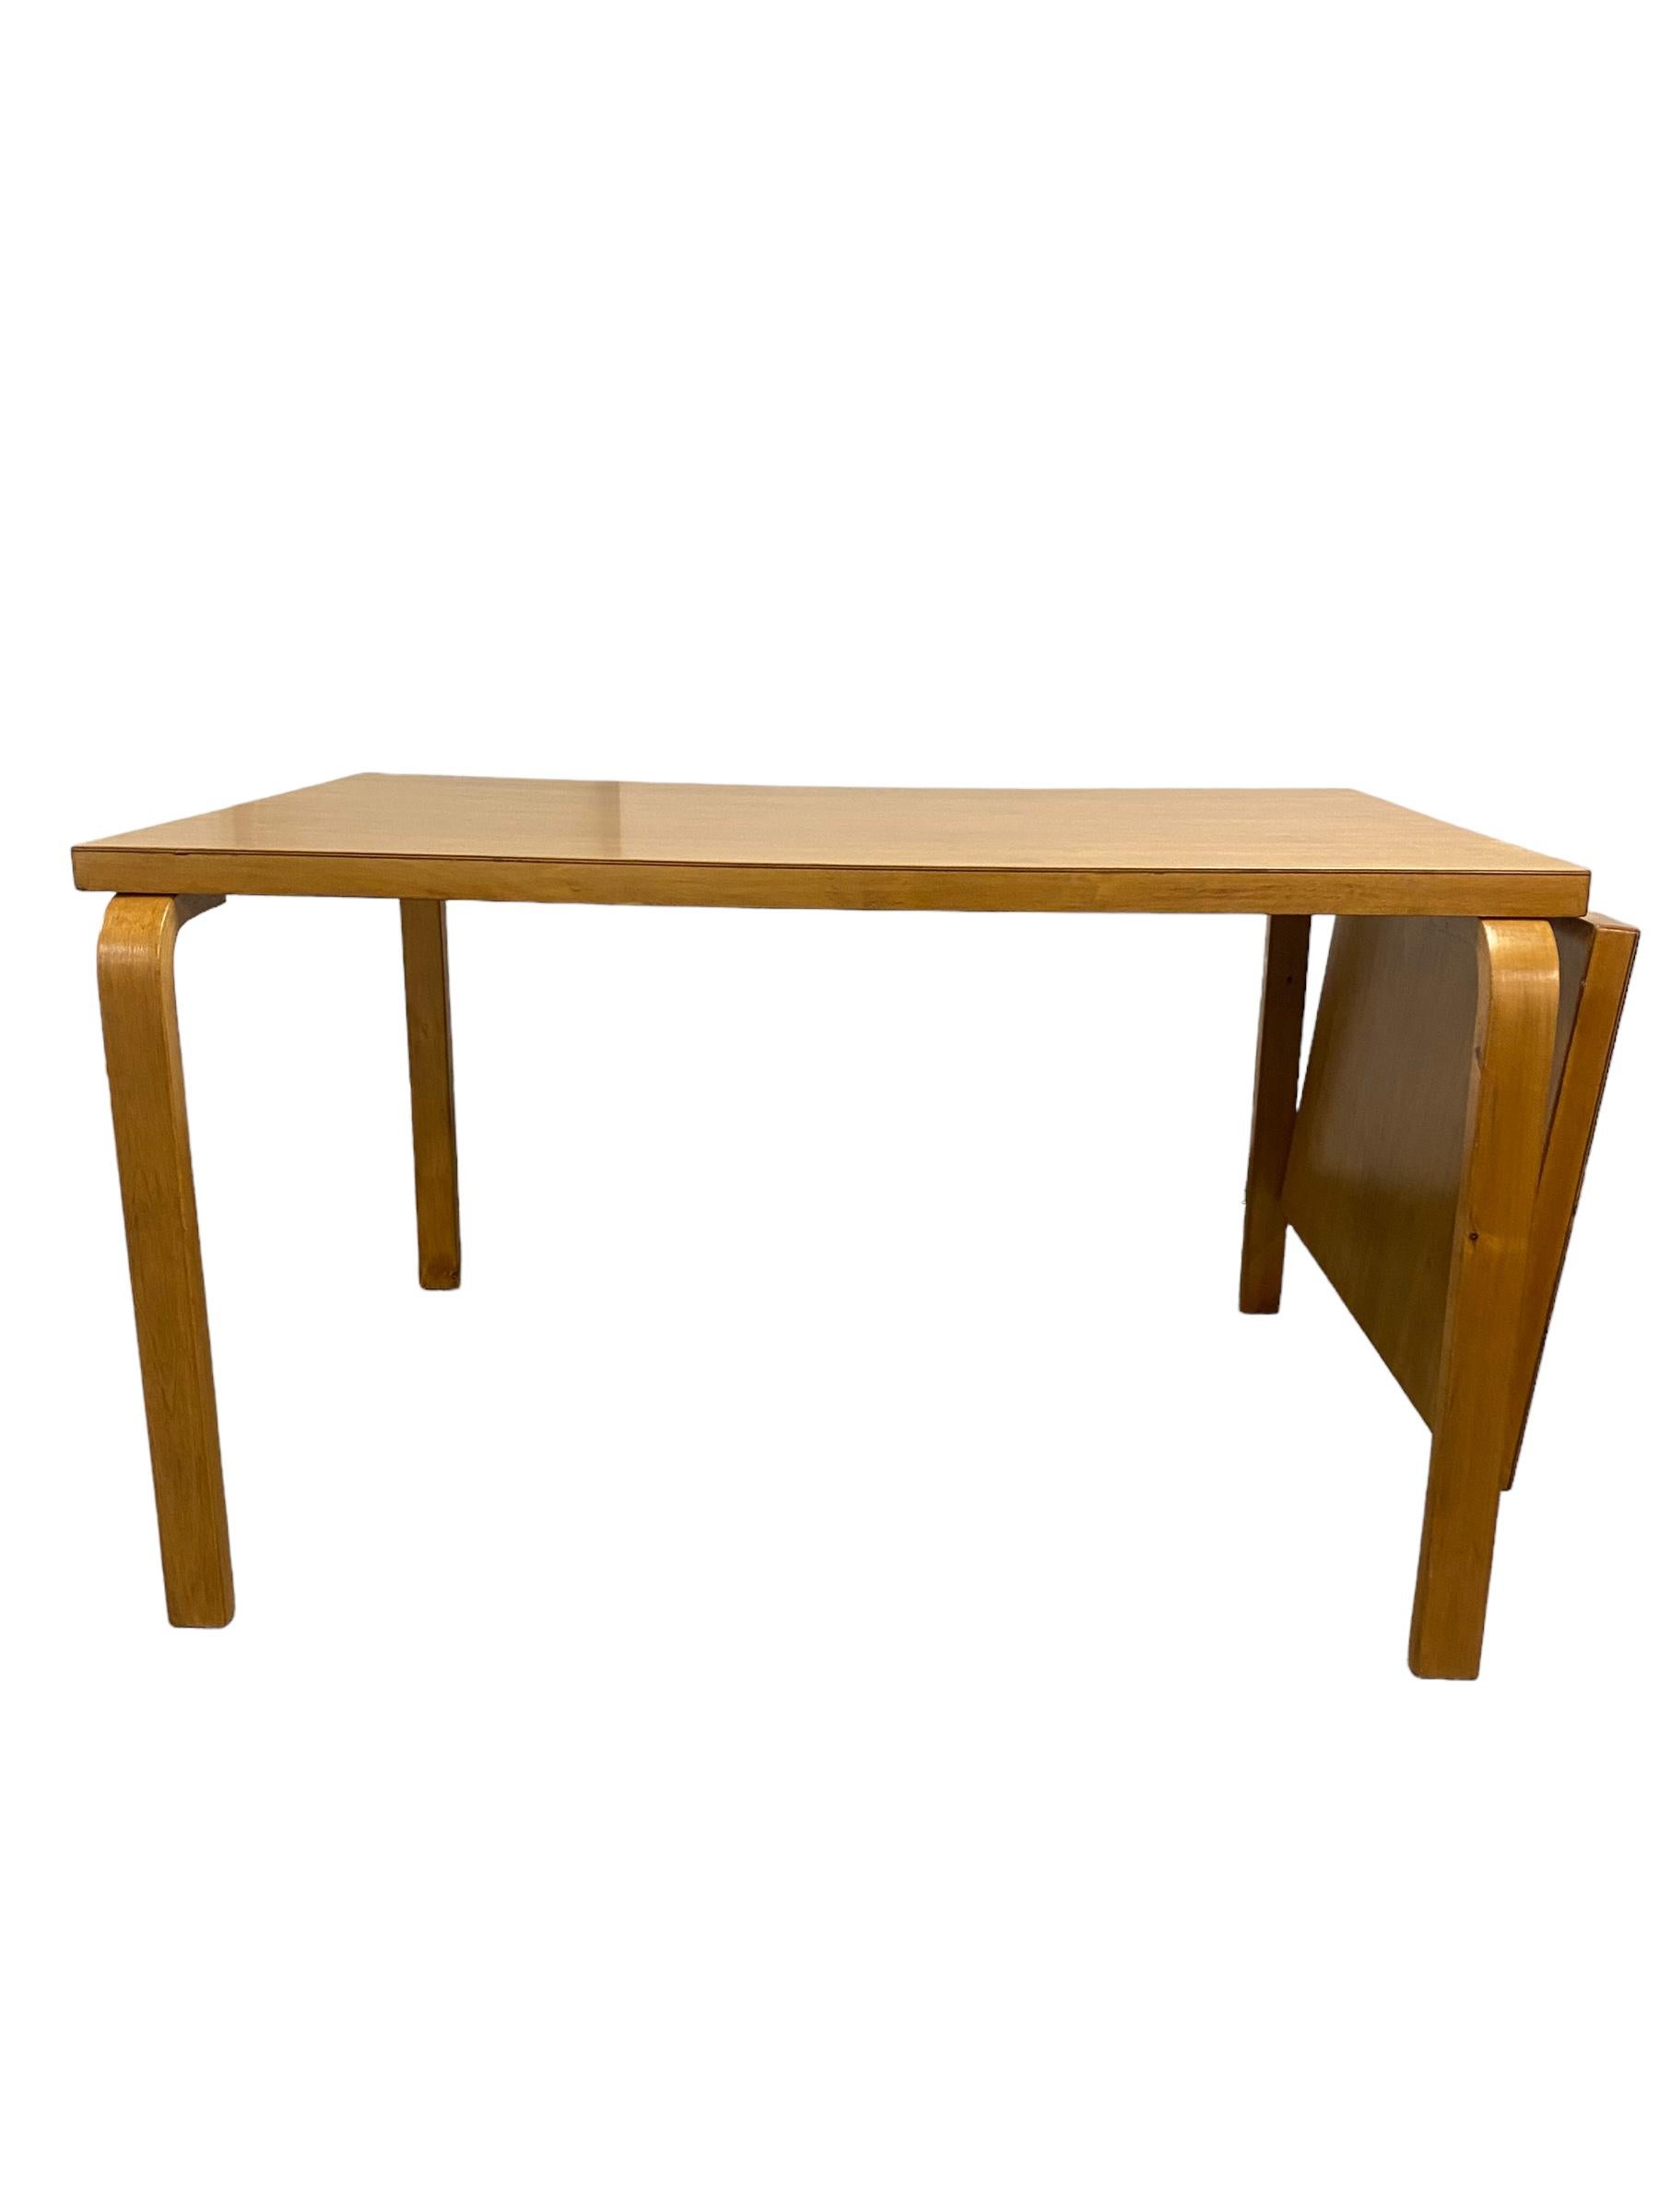 An Alvar Aalto Foldable Table in Birch,  Artek 1950s In Good Condition For Sale In Helsinki, FI